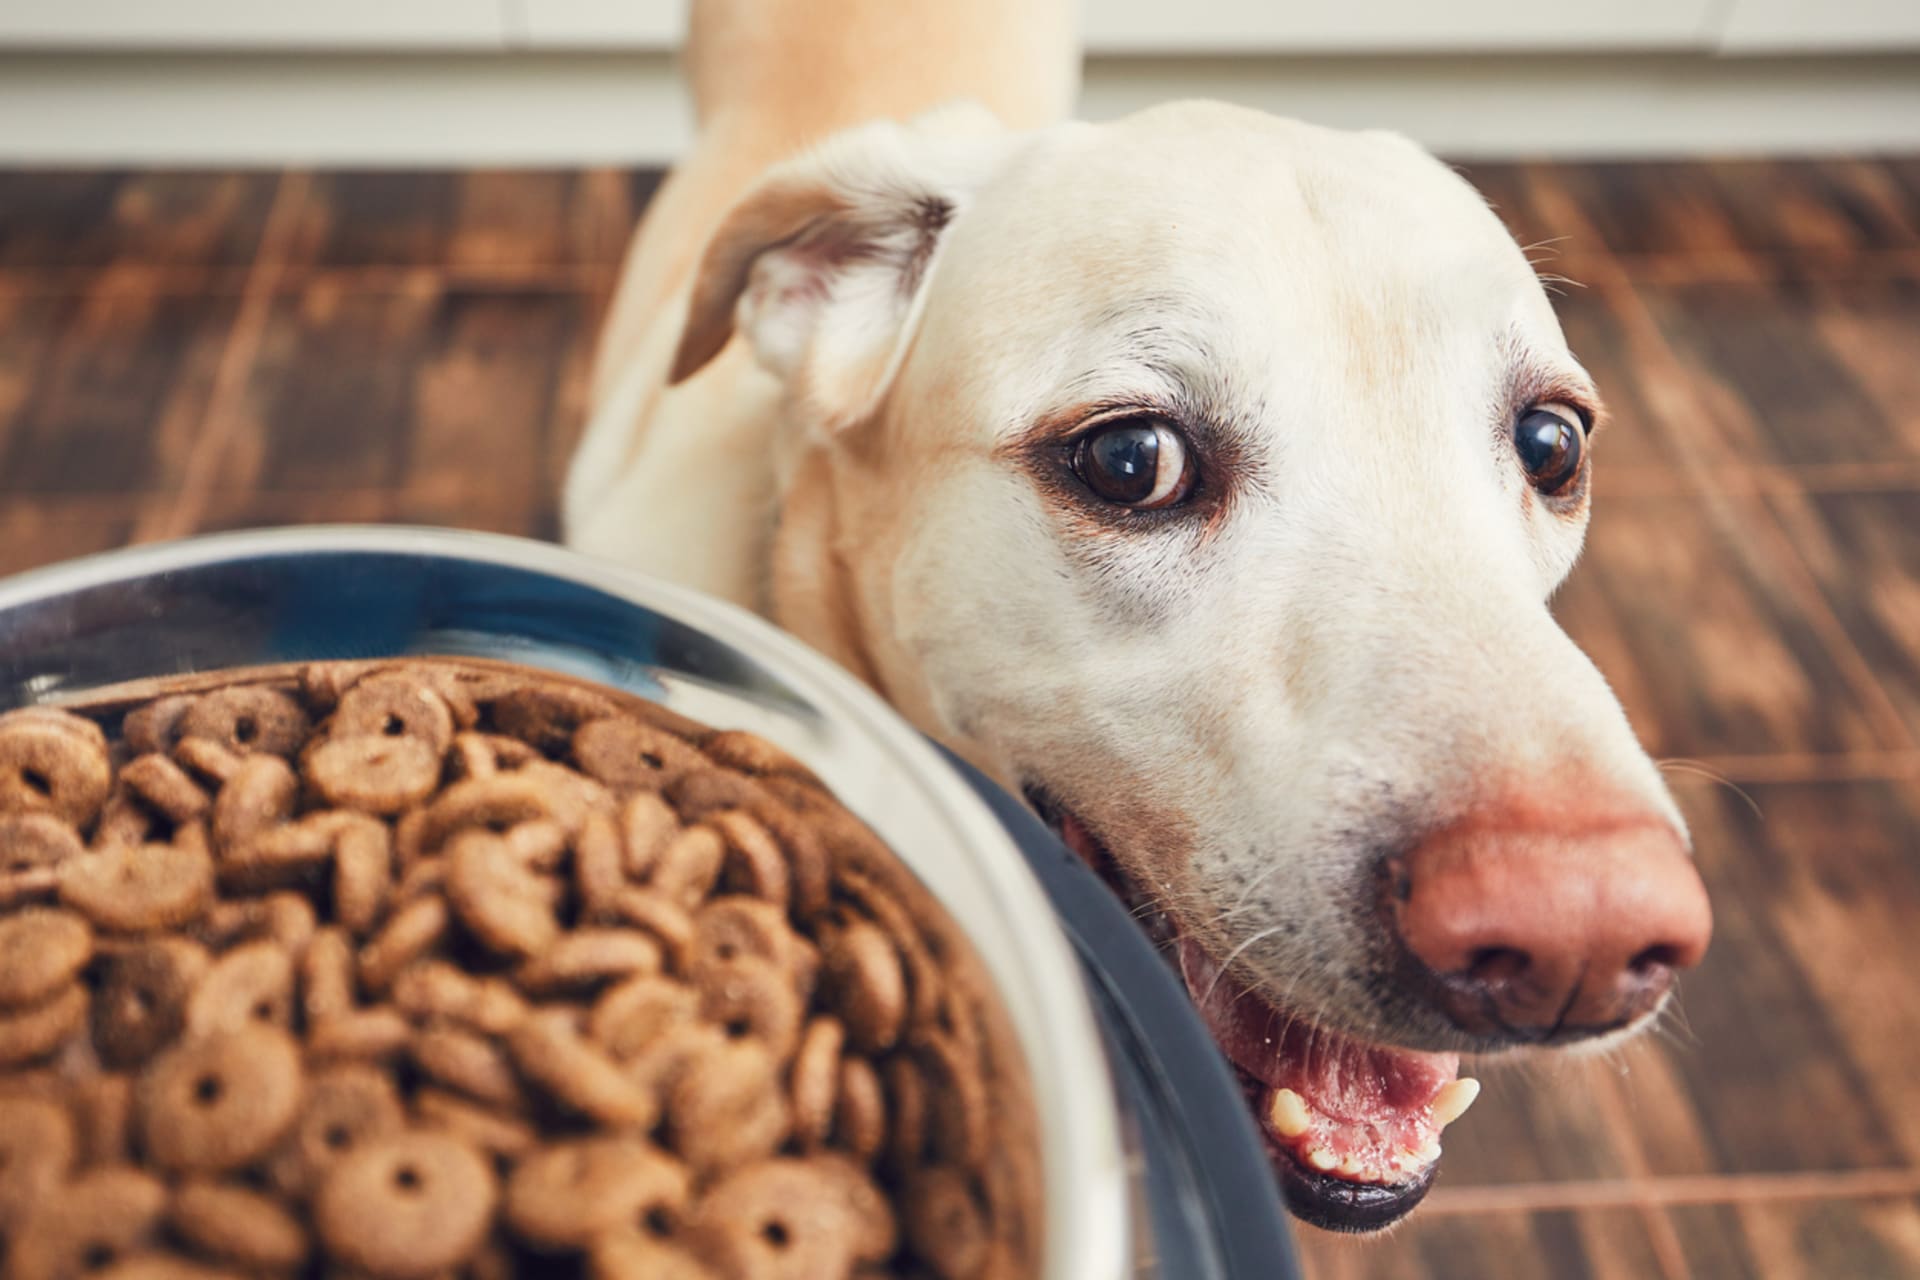 Měli bychom přemýšlet, co psům dáváme k jídlu.